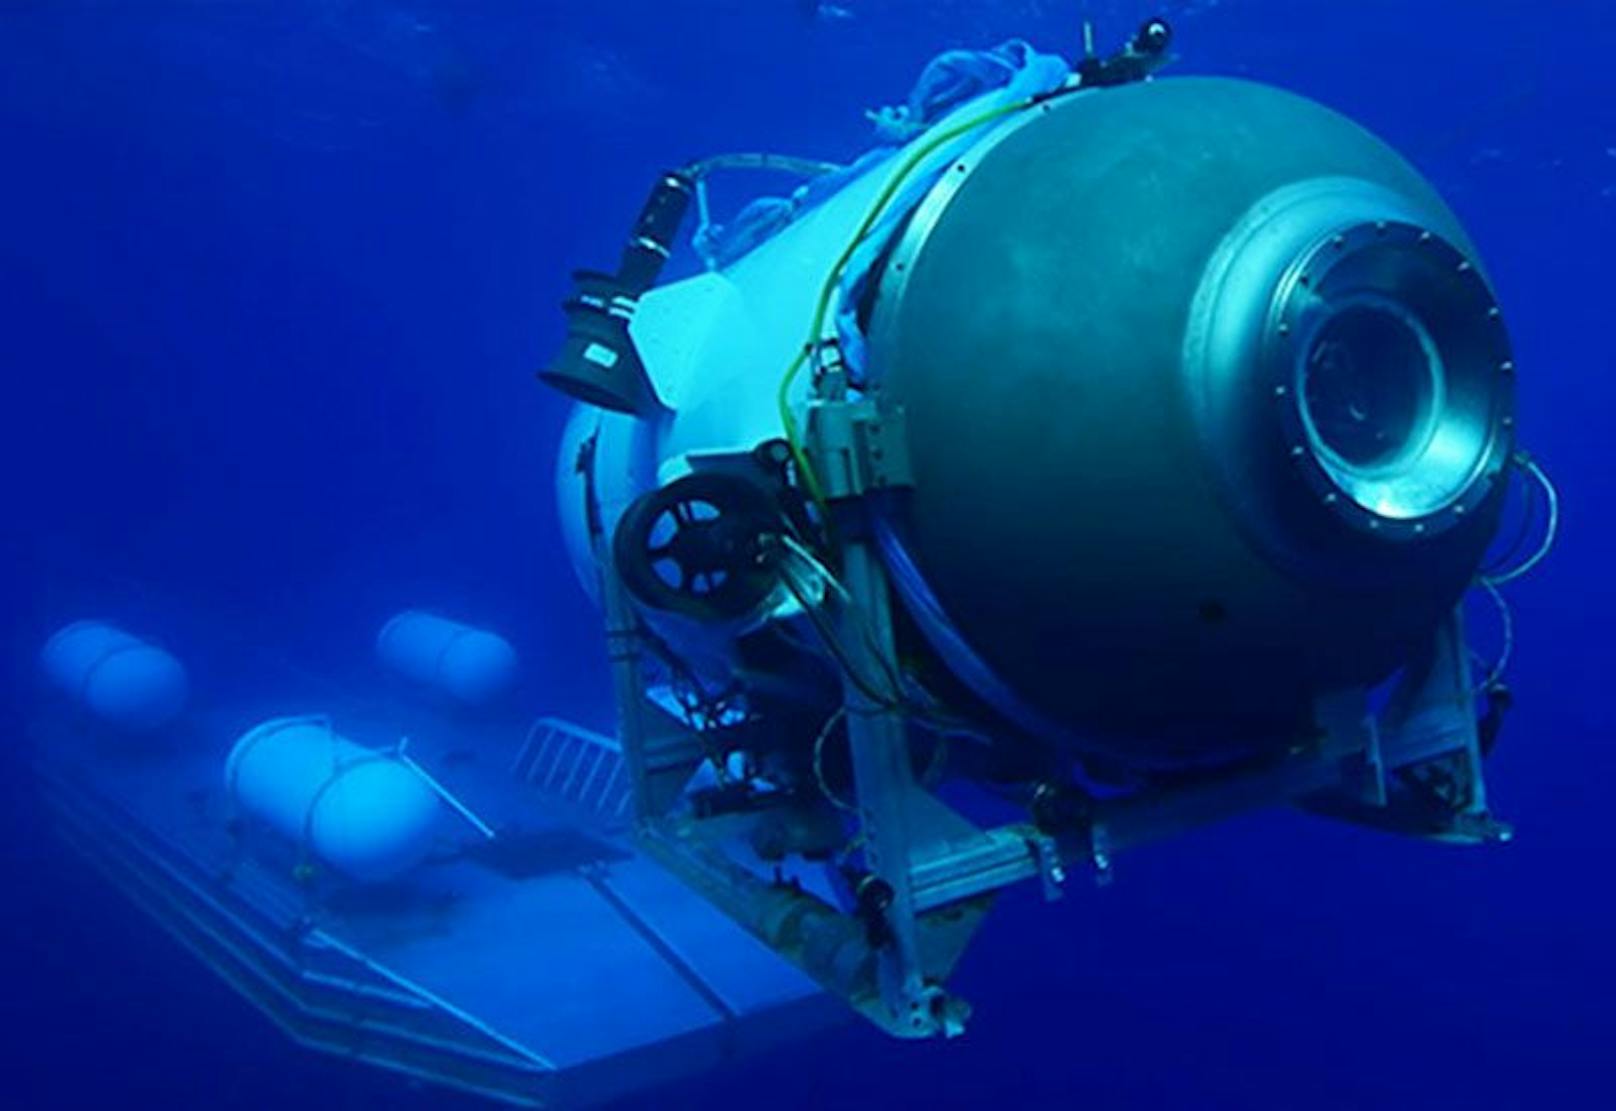 "Besorgniserregend" – Experte über verschollenes U-Boot